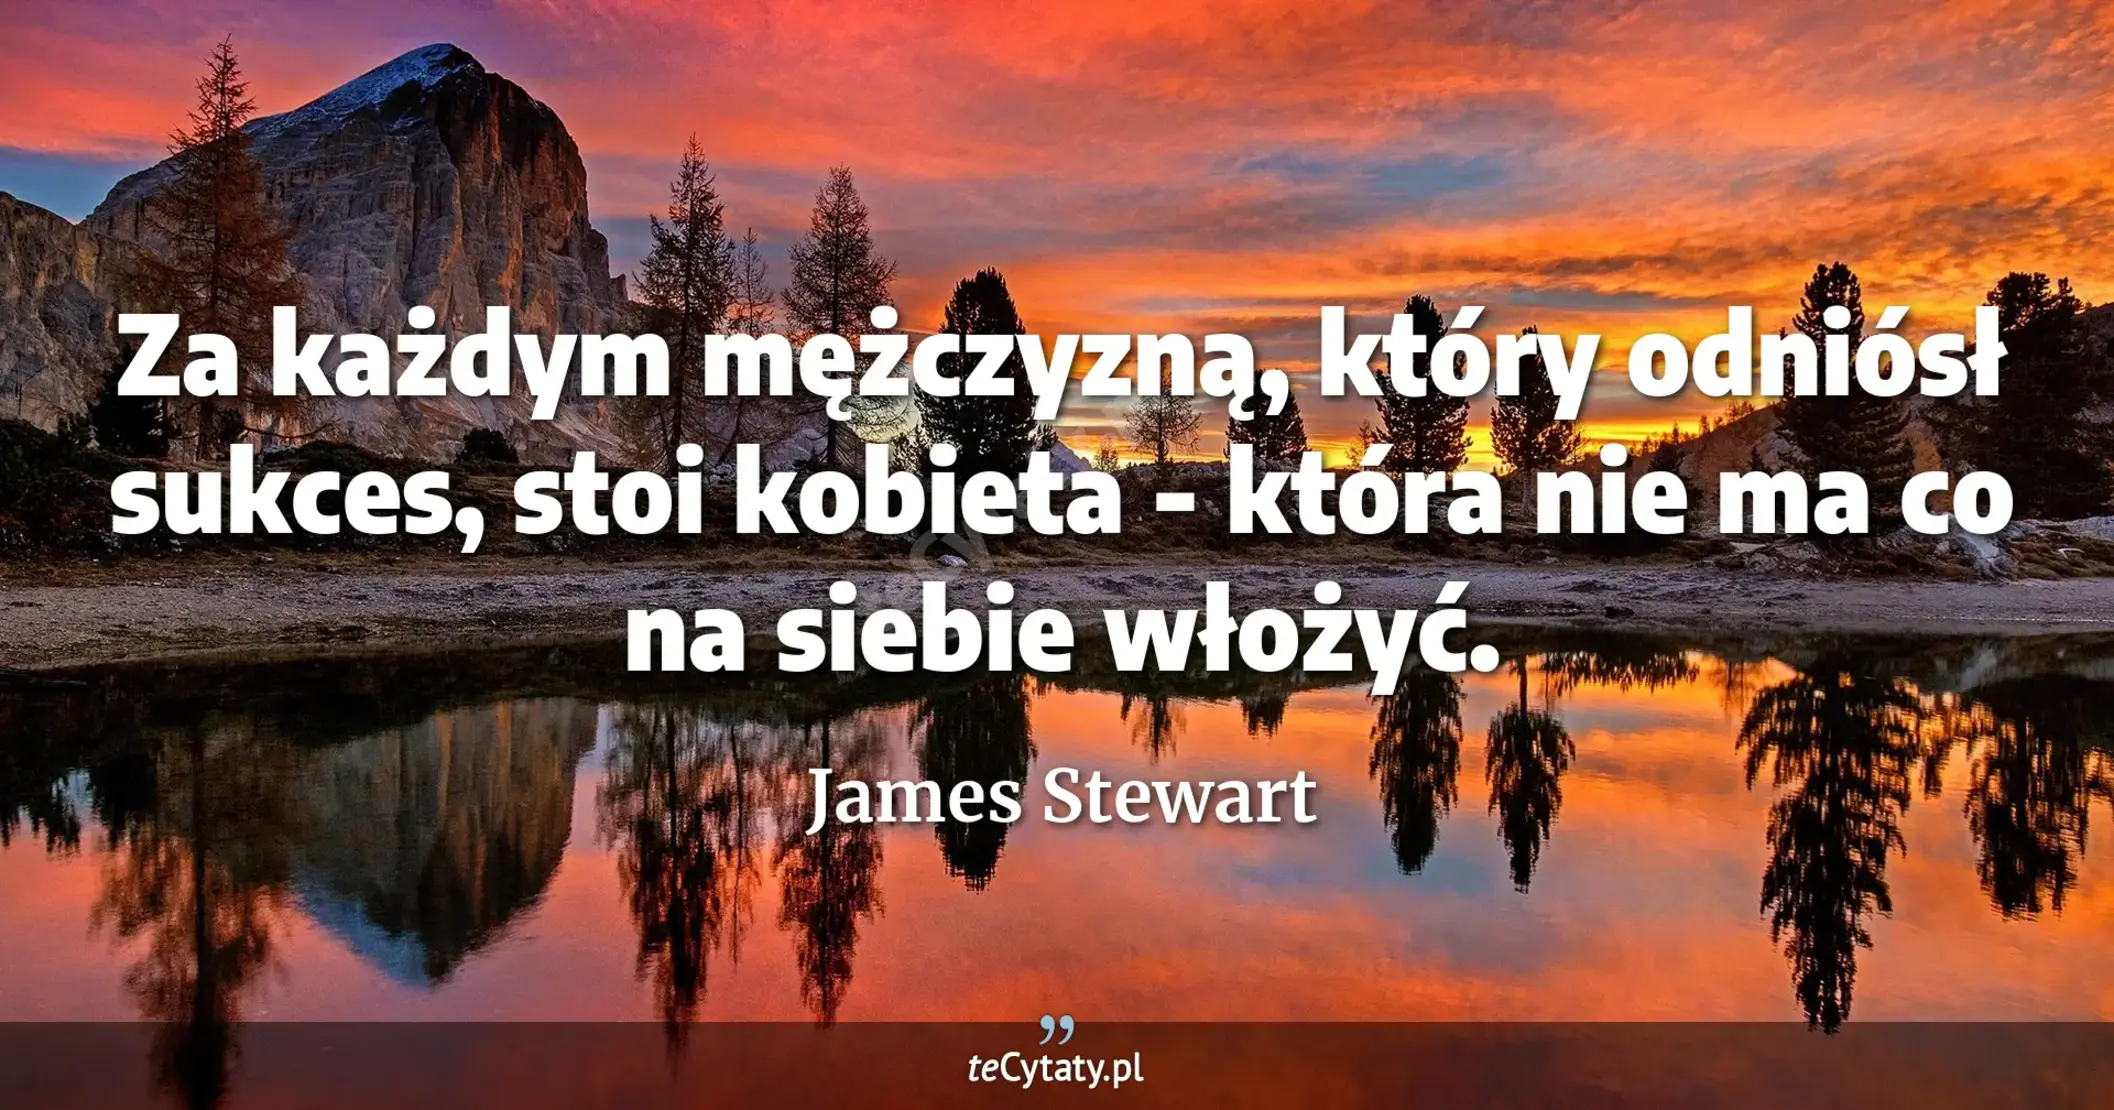 Za każdym mężczyzną, który odniósł sukces, stoi kobieta - która nie ma co na siebie włożyć. - James Stewart